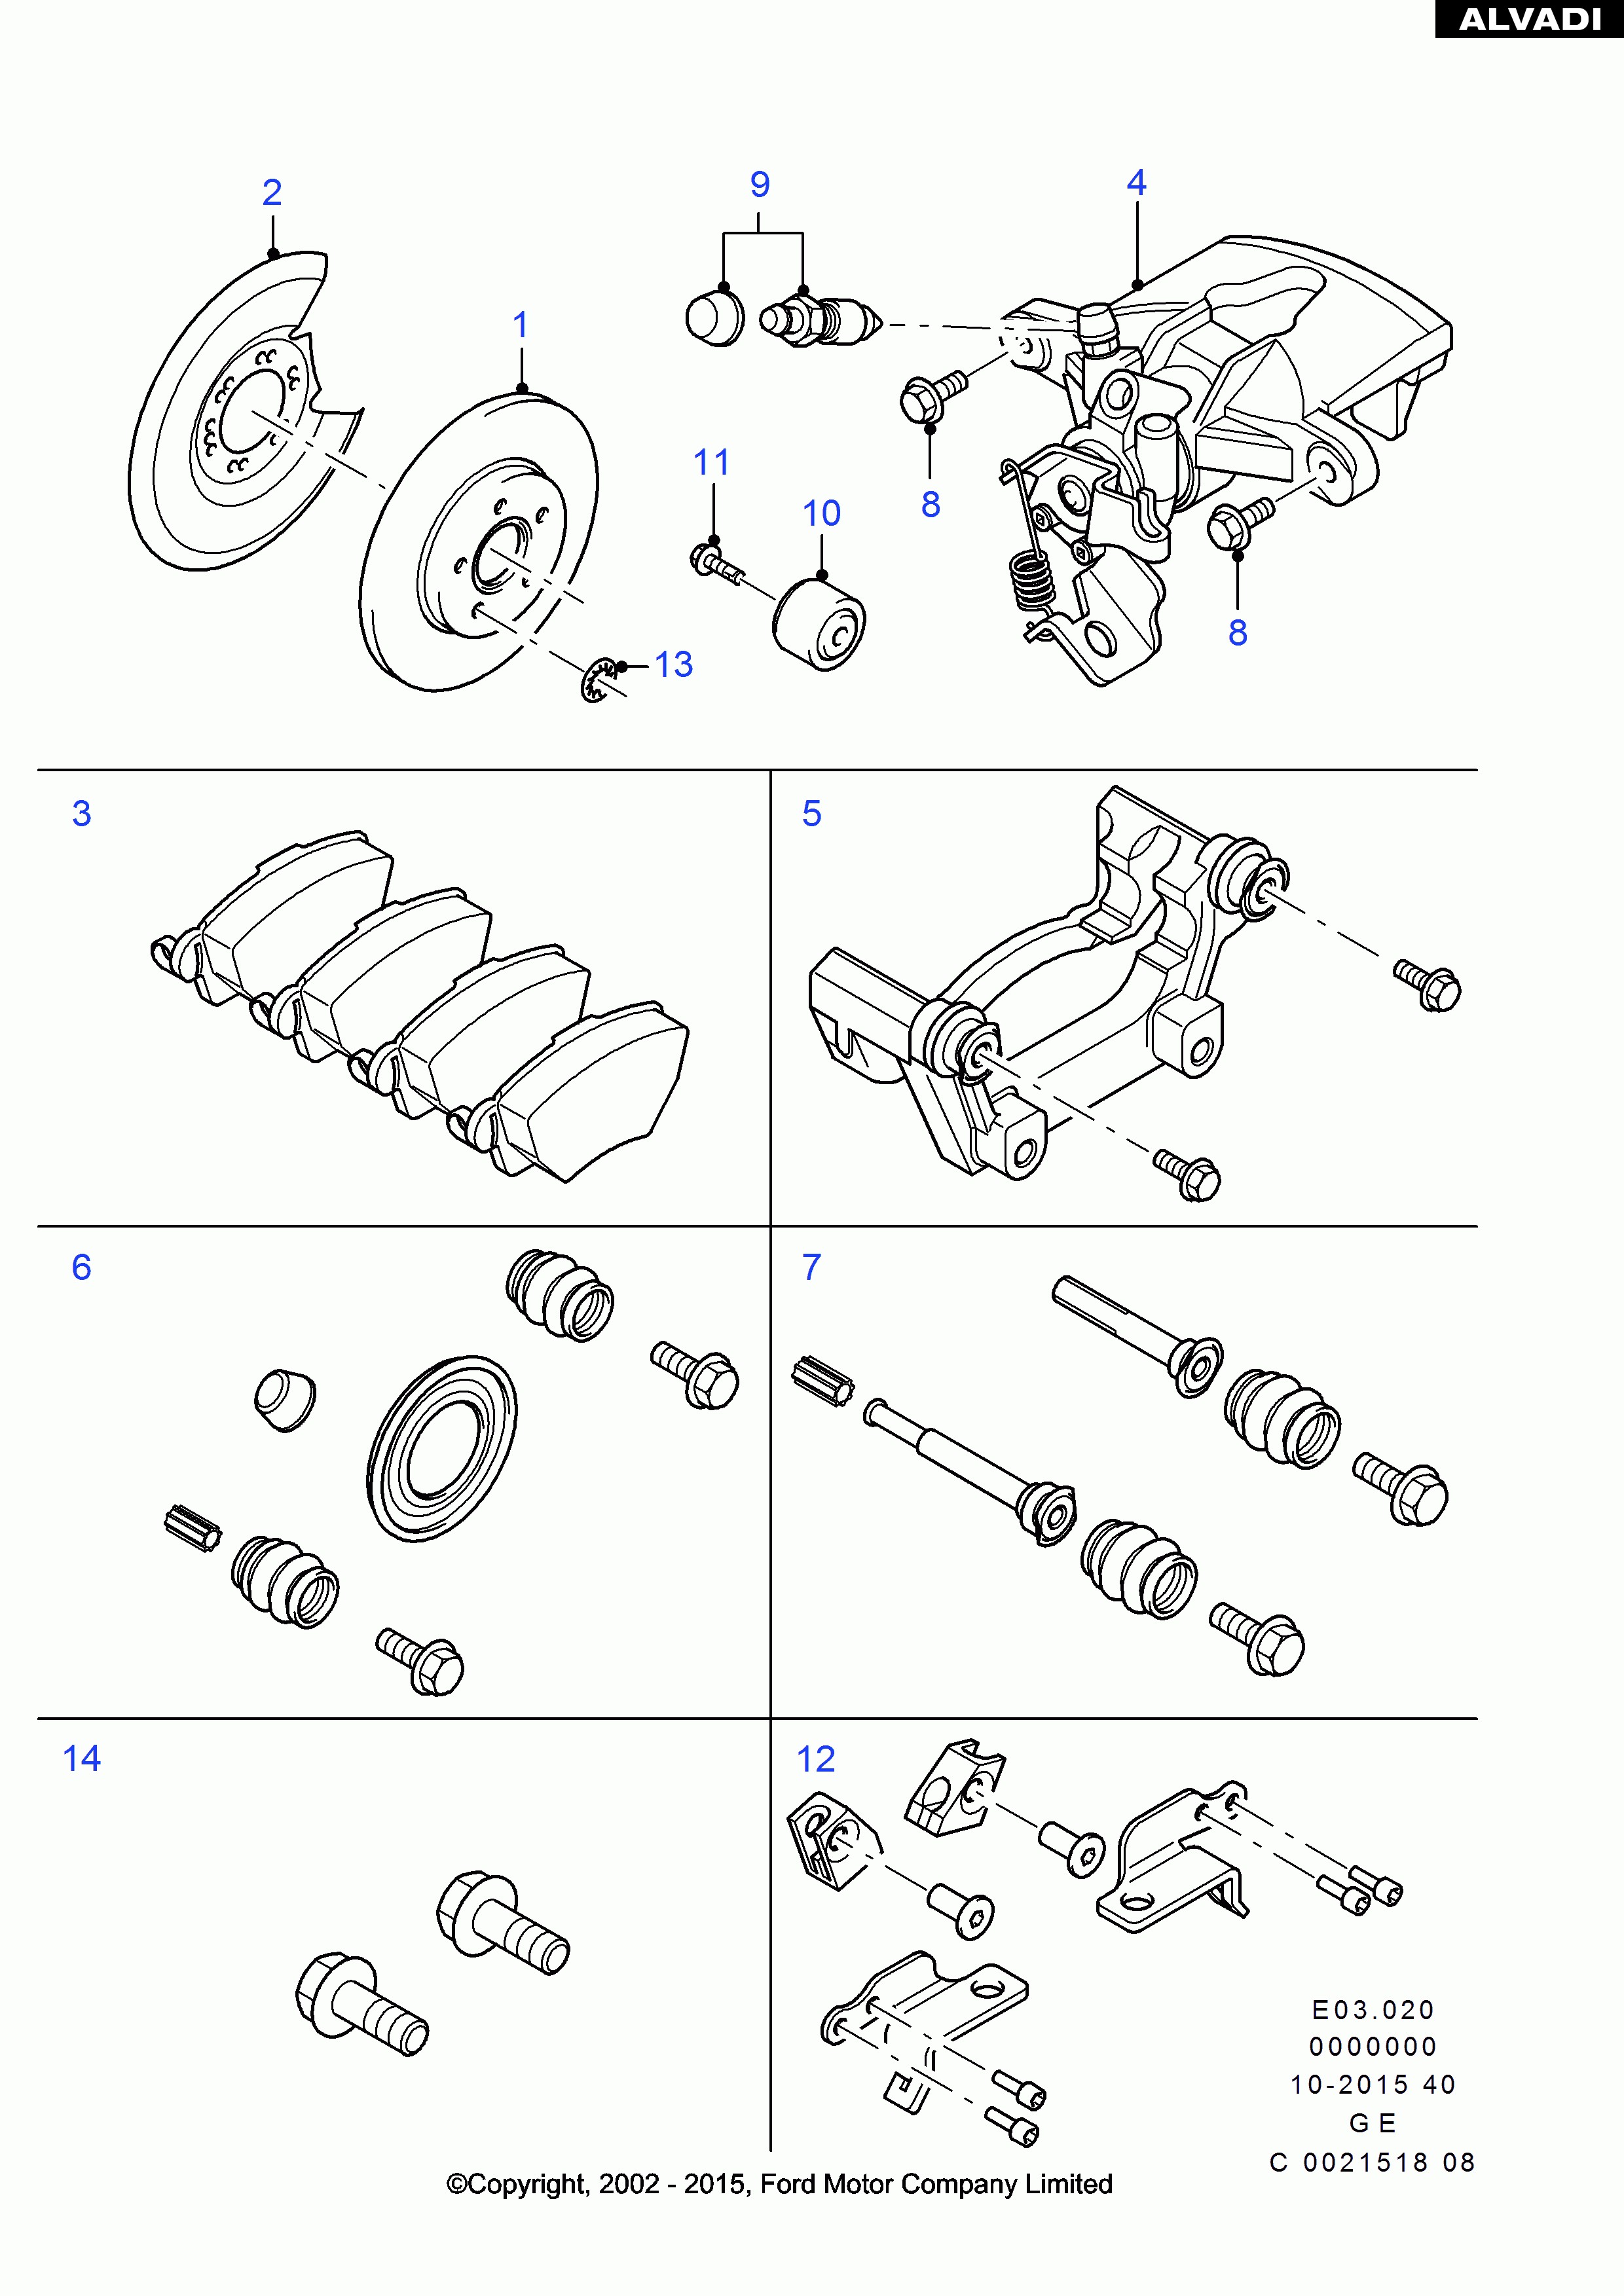 Disc Brake assembly Diagram ford Rear Brake Discs and Calipers Of Disc Brake assembly Diagram